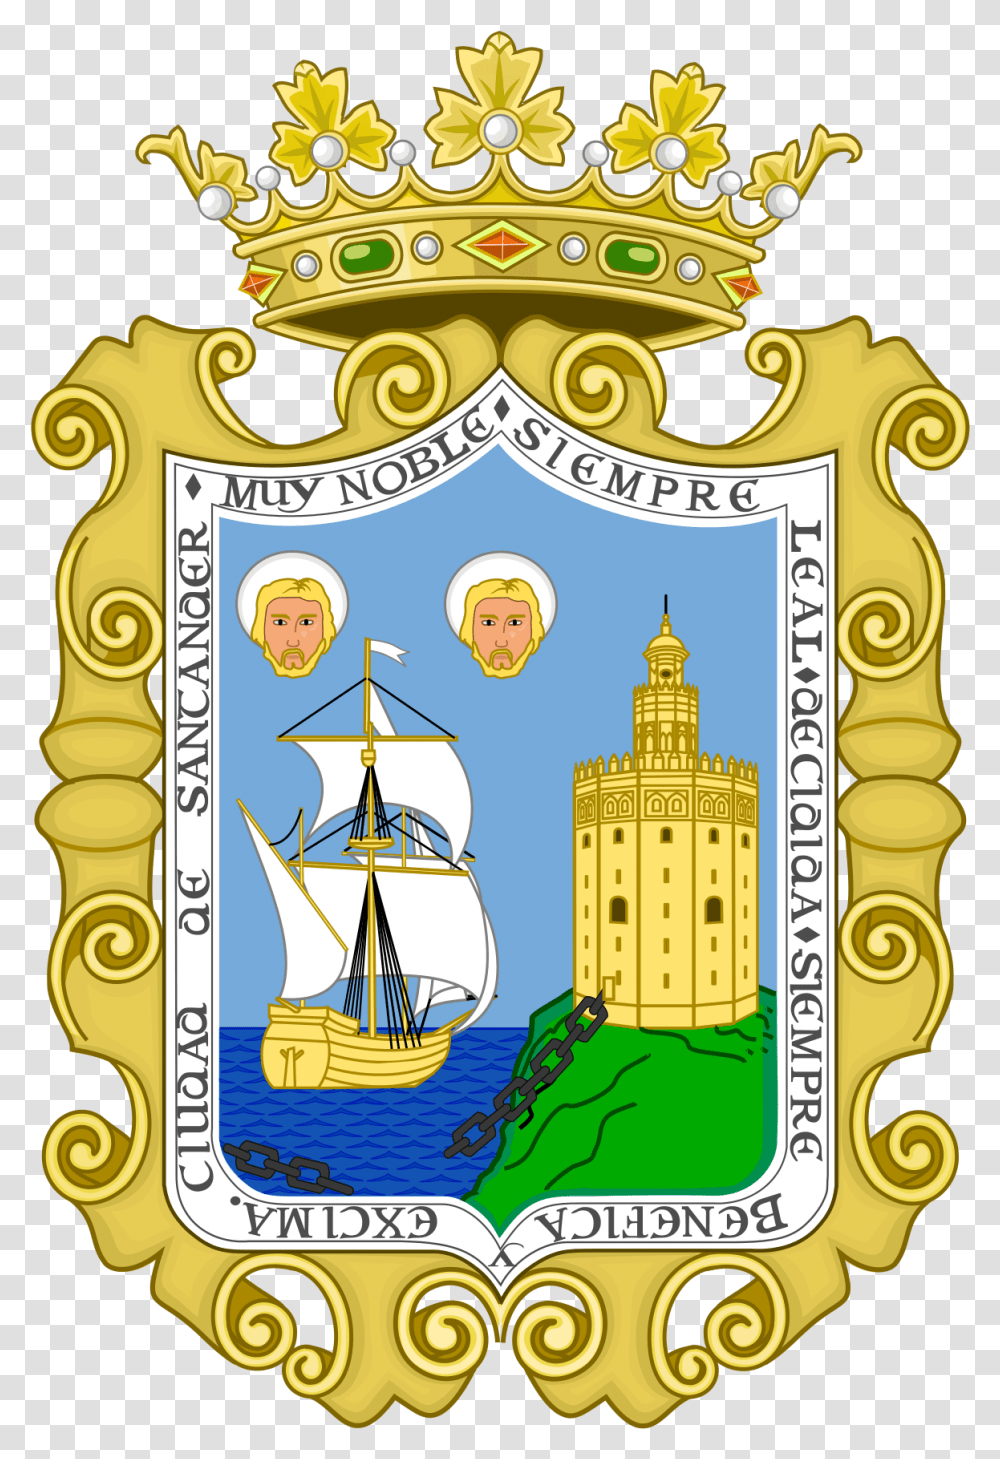 Escudo De Santander Torre Del Oro, Emblem, Vehicle, Transportation Transparent Png